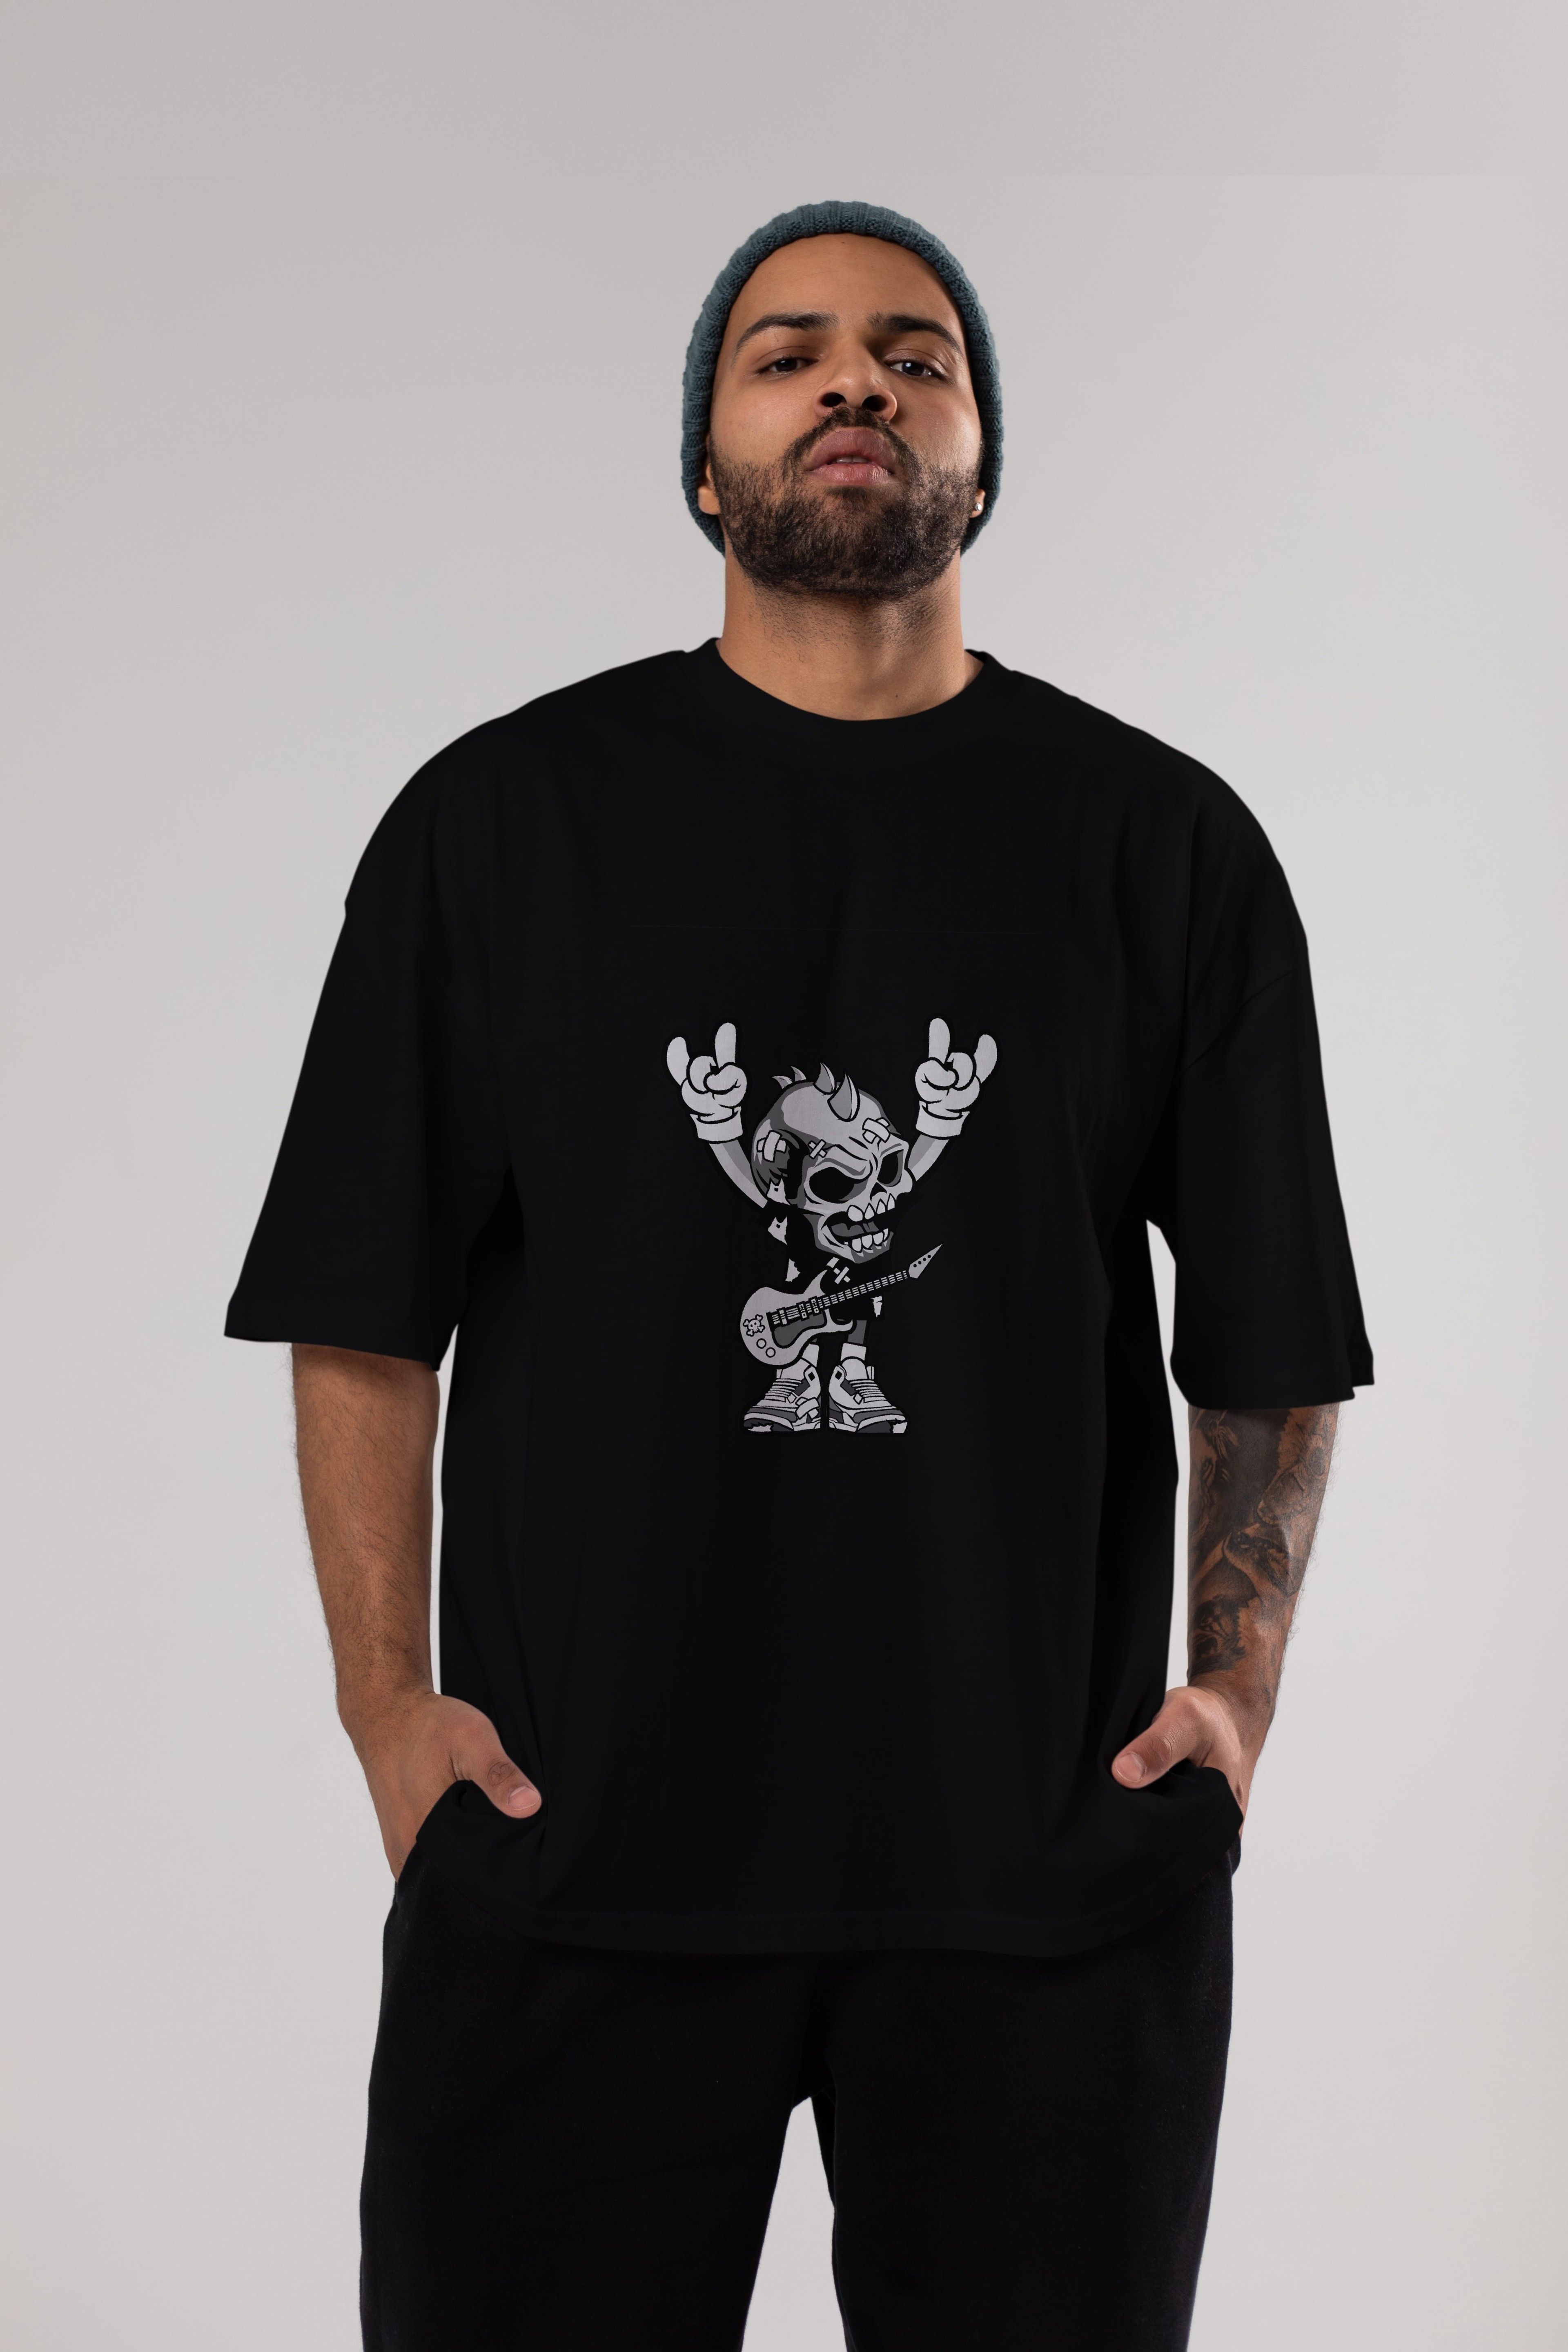 Punk Rock Skull Ön Baskılı Oversize t-shirt Erkek Kadın Unisex %100 Pamuk tişort